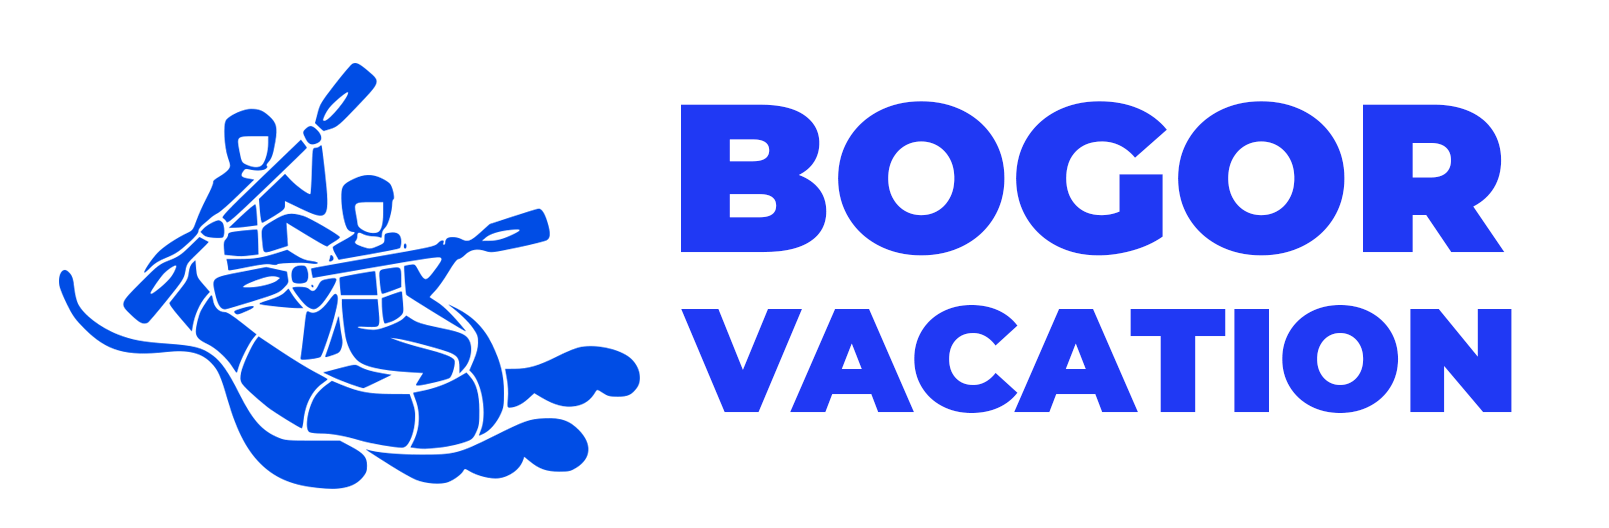 Bogor Vacation